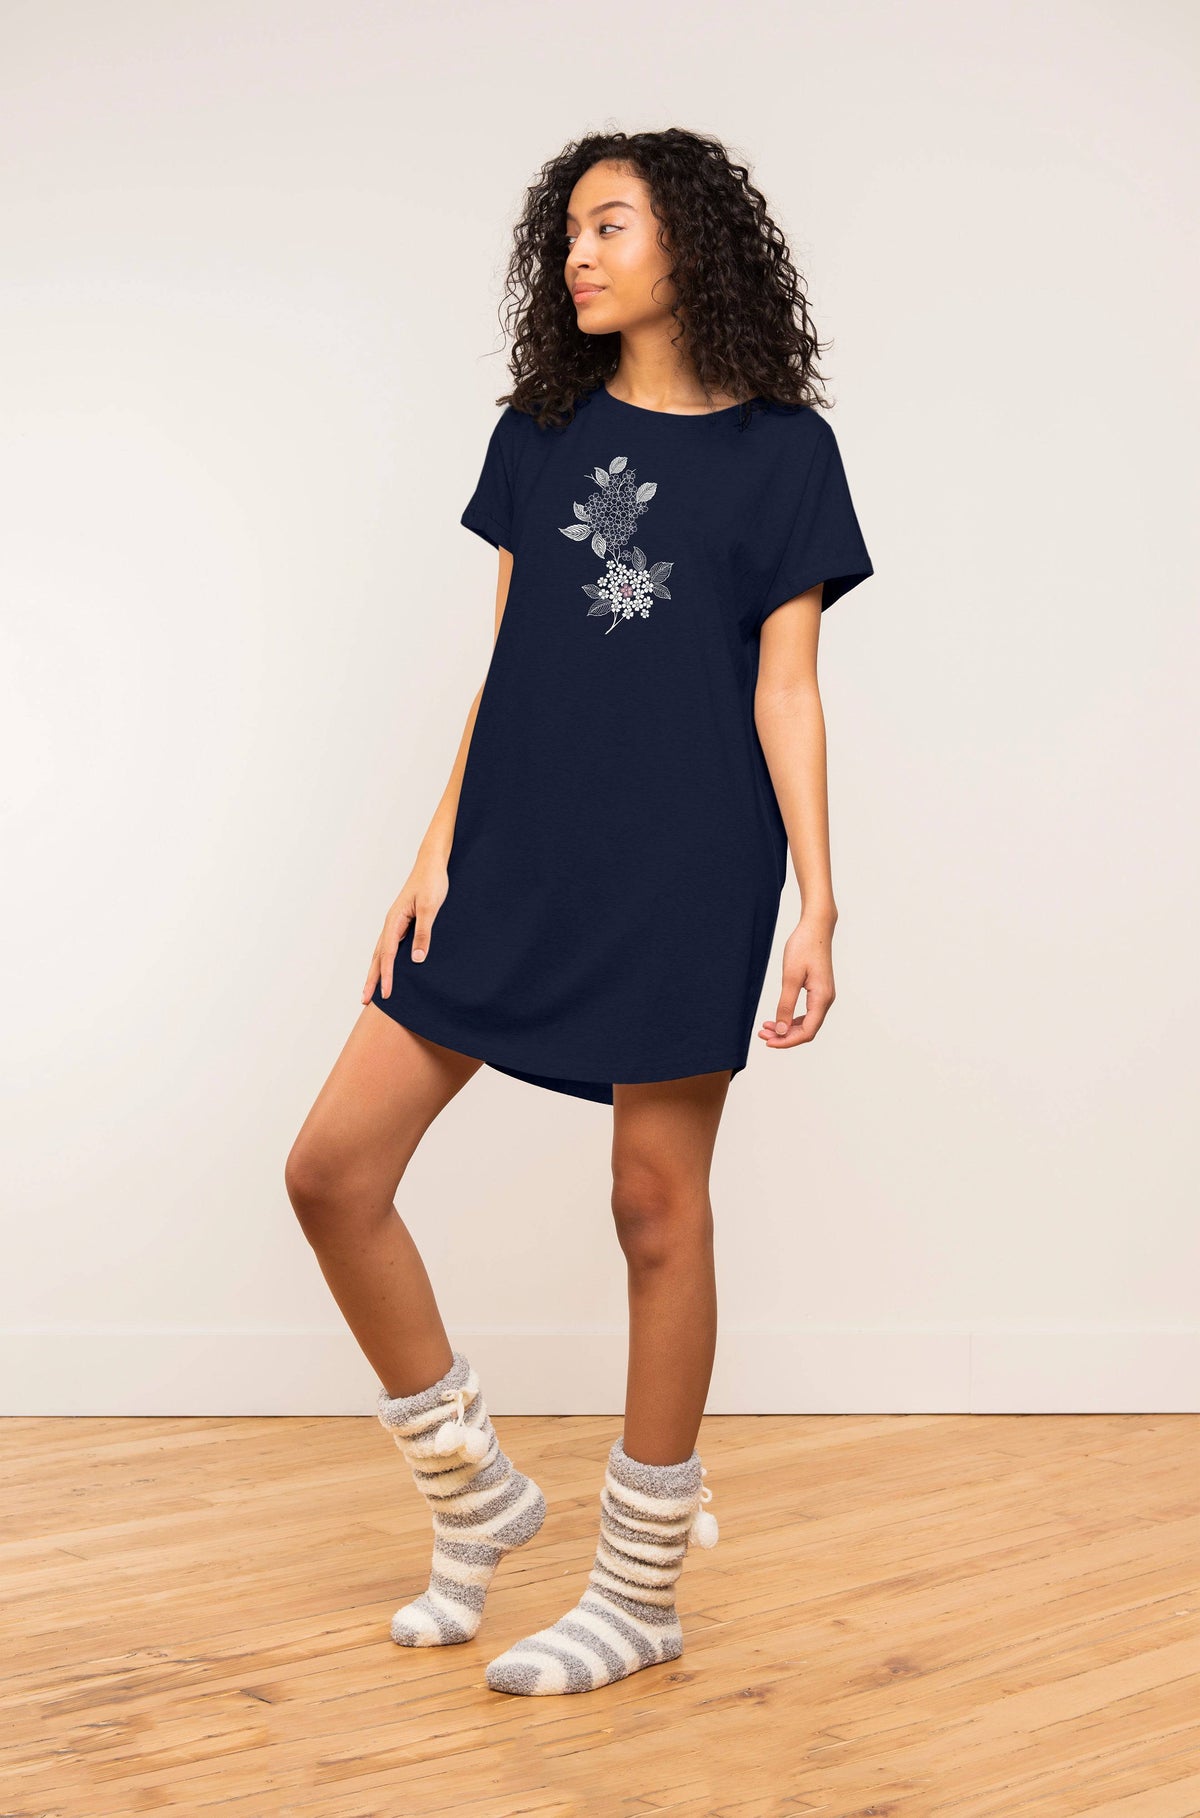 T-Shirt Dress - Navy Floral - LATTELOVE Co.